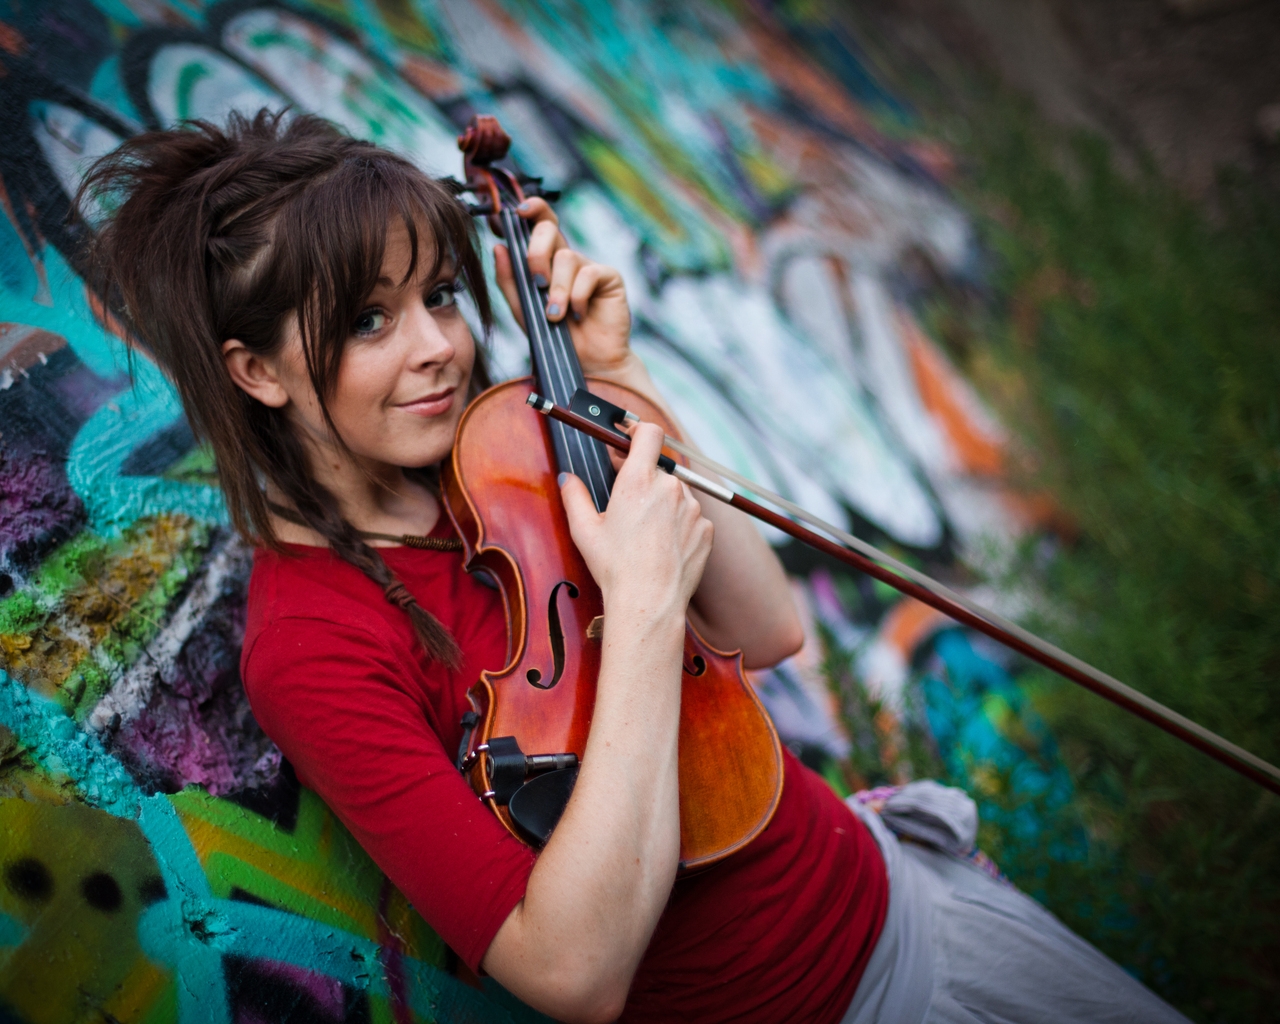 Lindsey Stirling Violin for 1280 x 1024 resolution